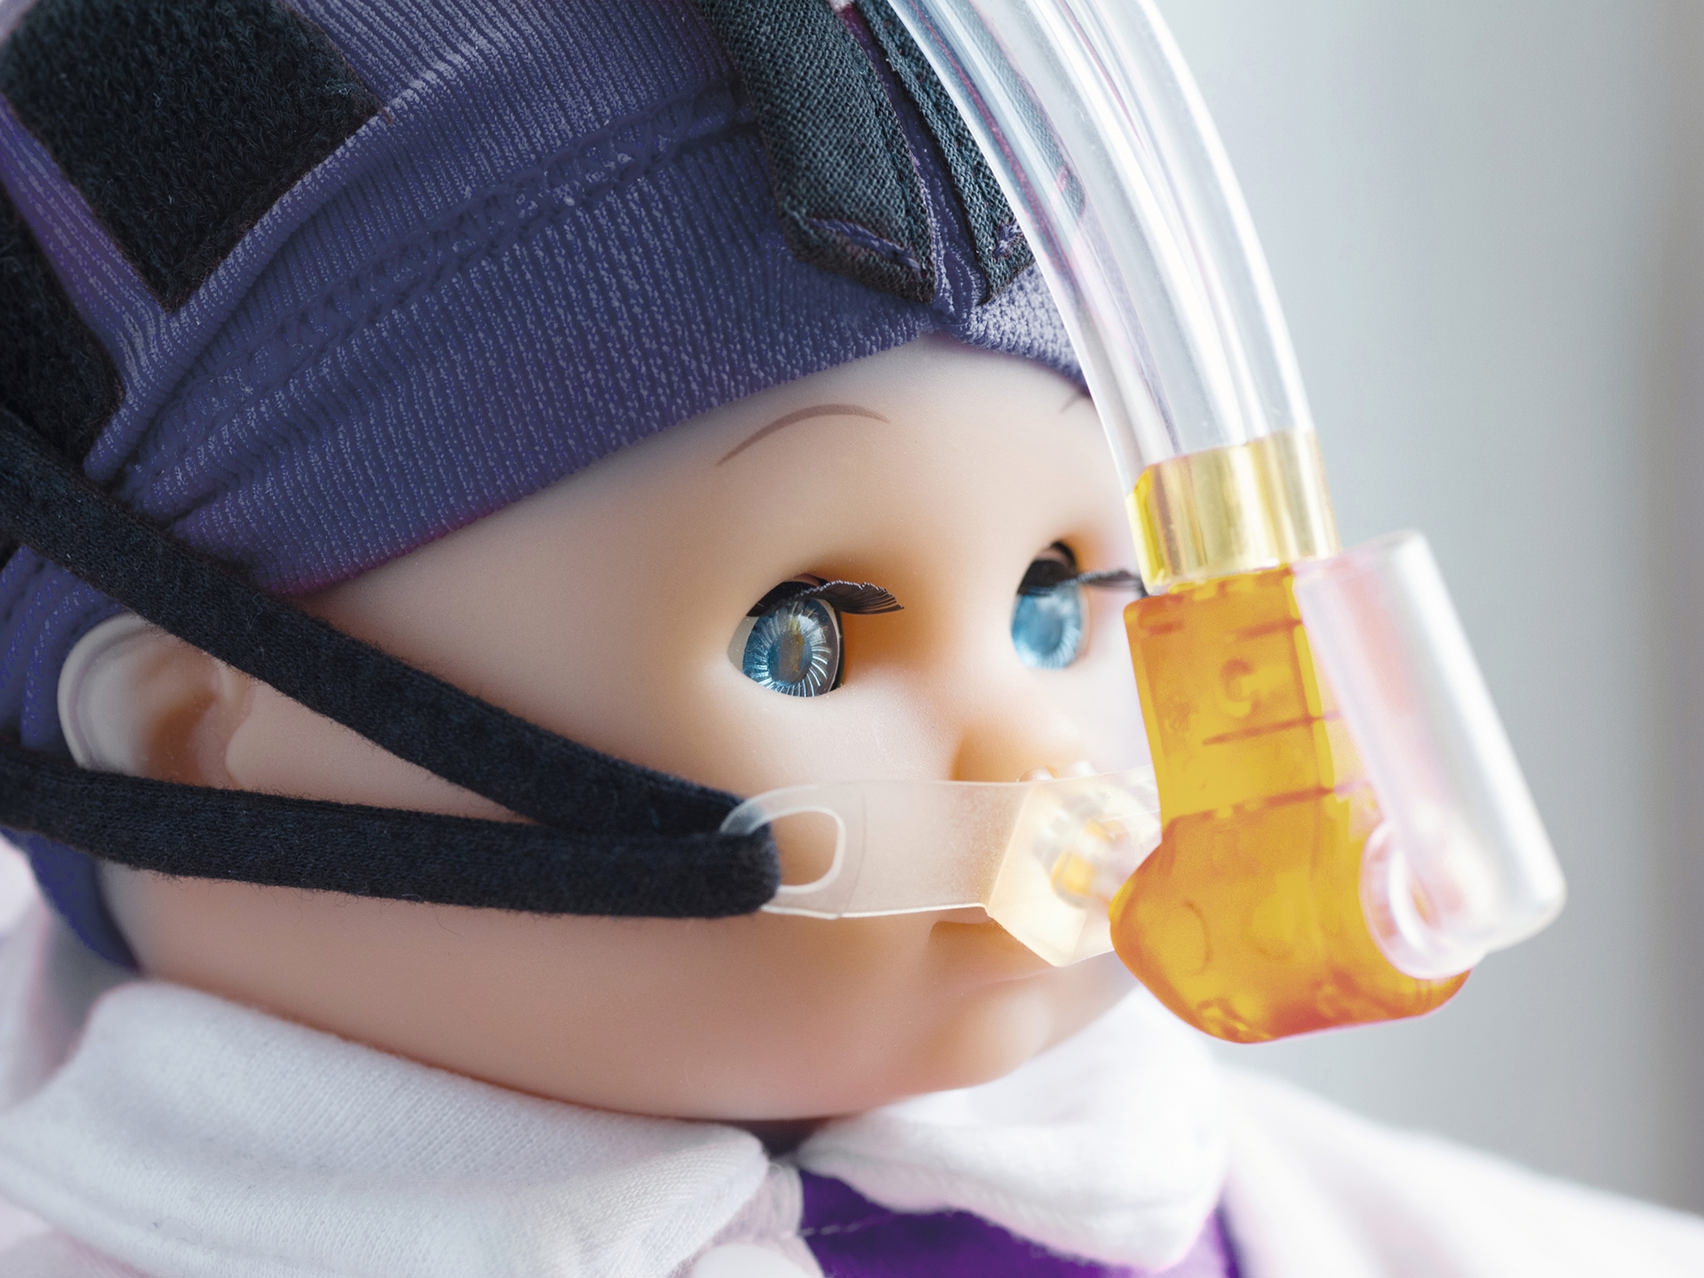 Blízký záběr na obličej panenky s nasazenou dýchací maskou.